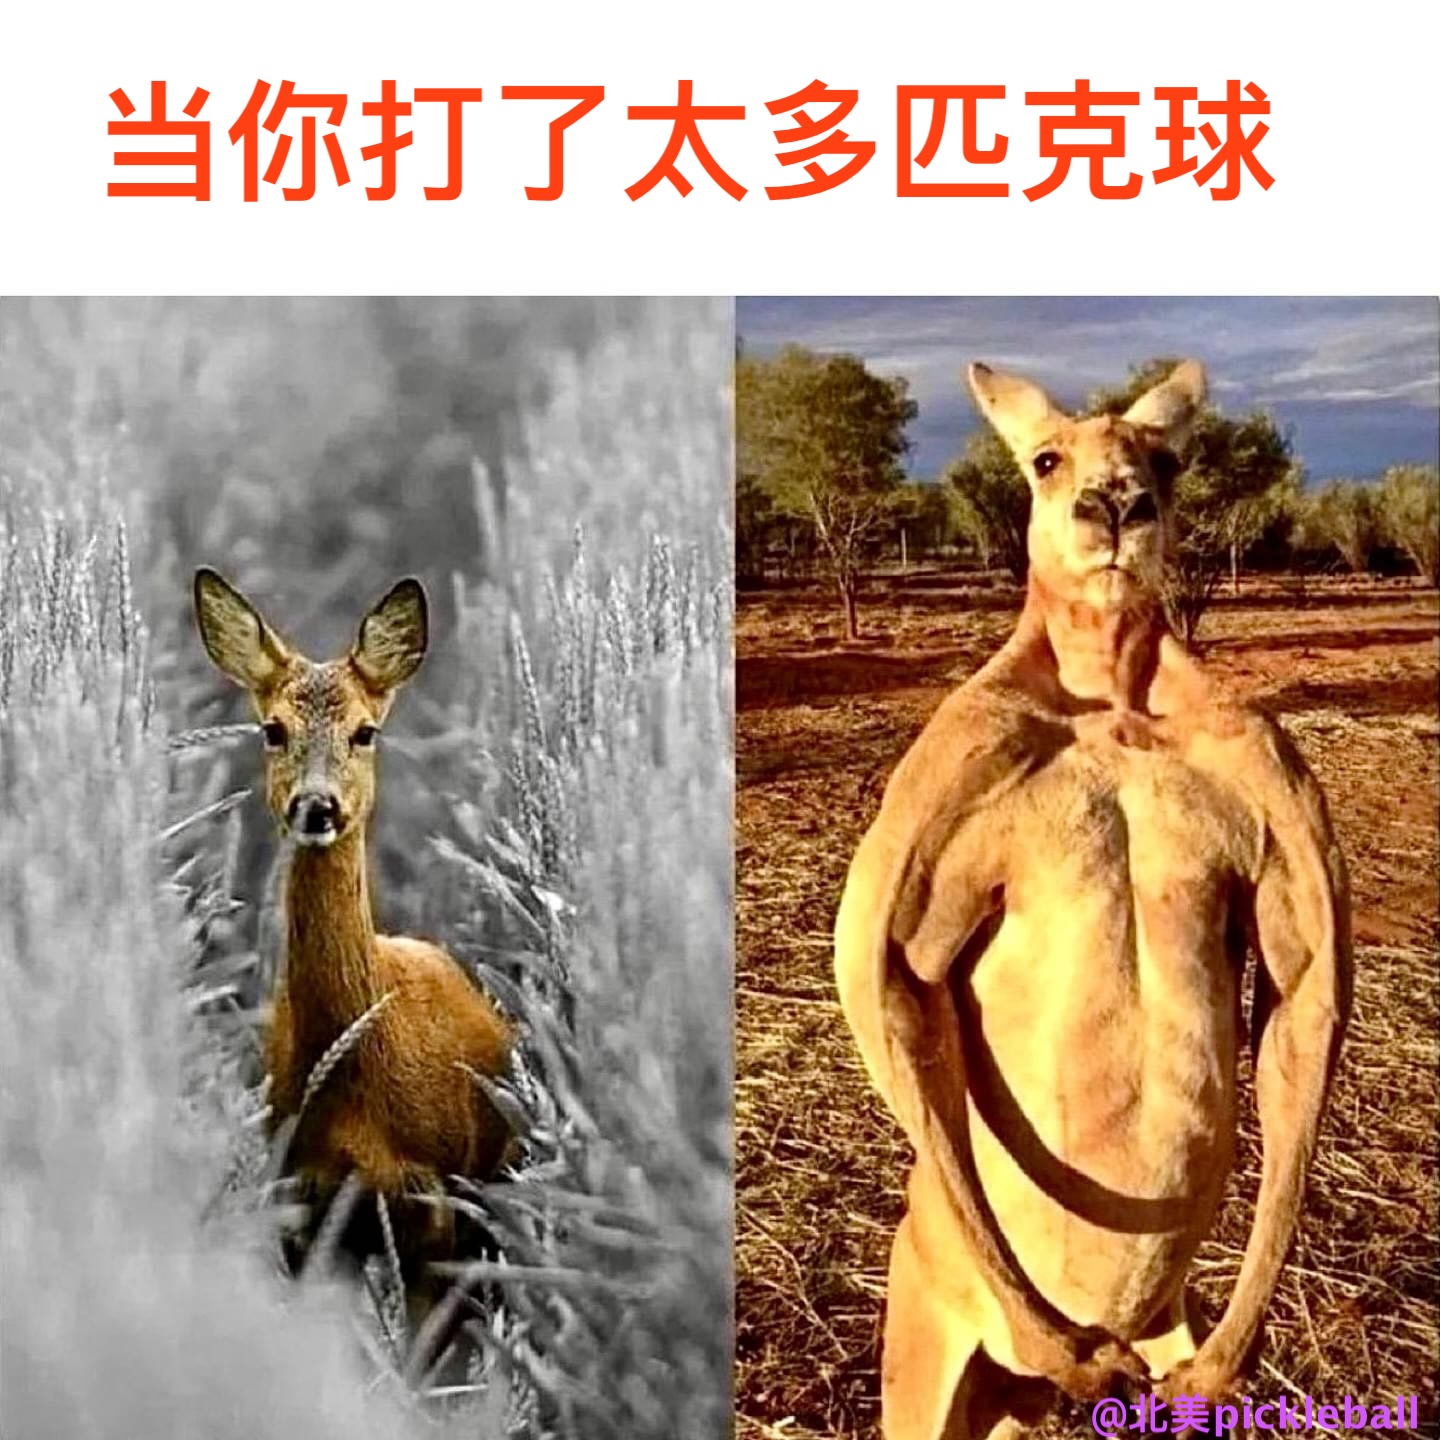 deers-kangaroos.jpg